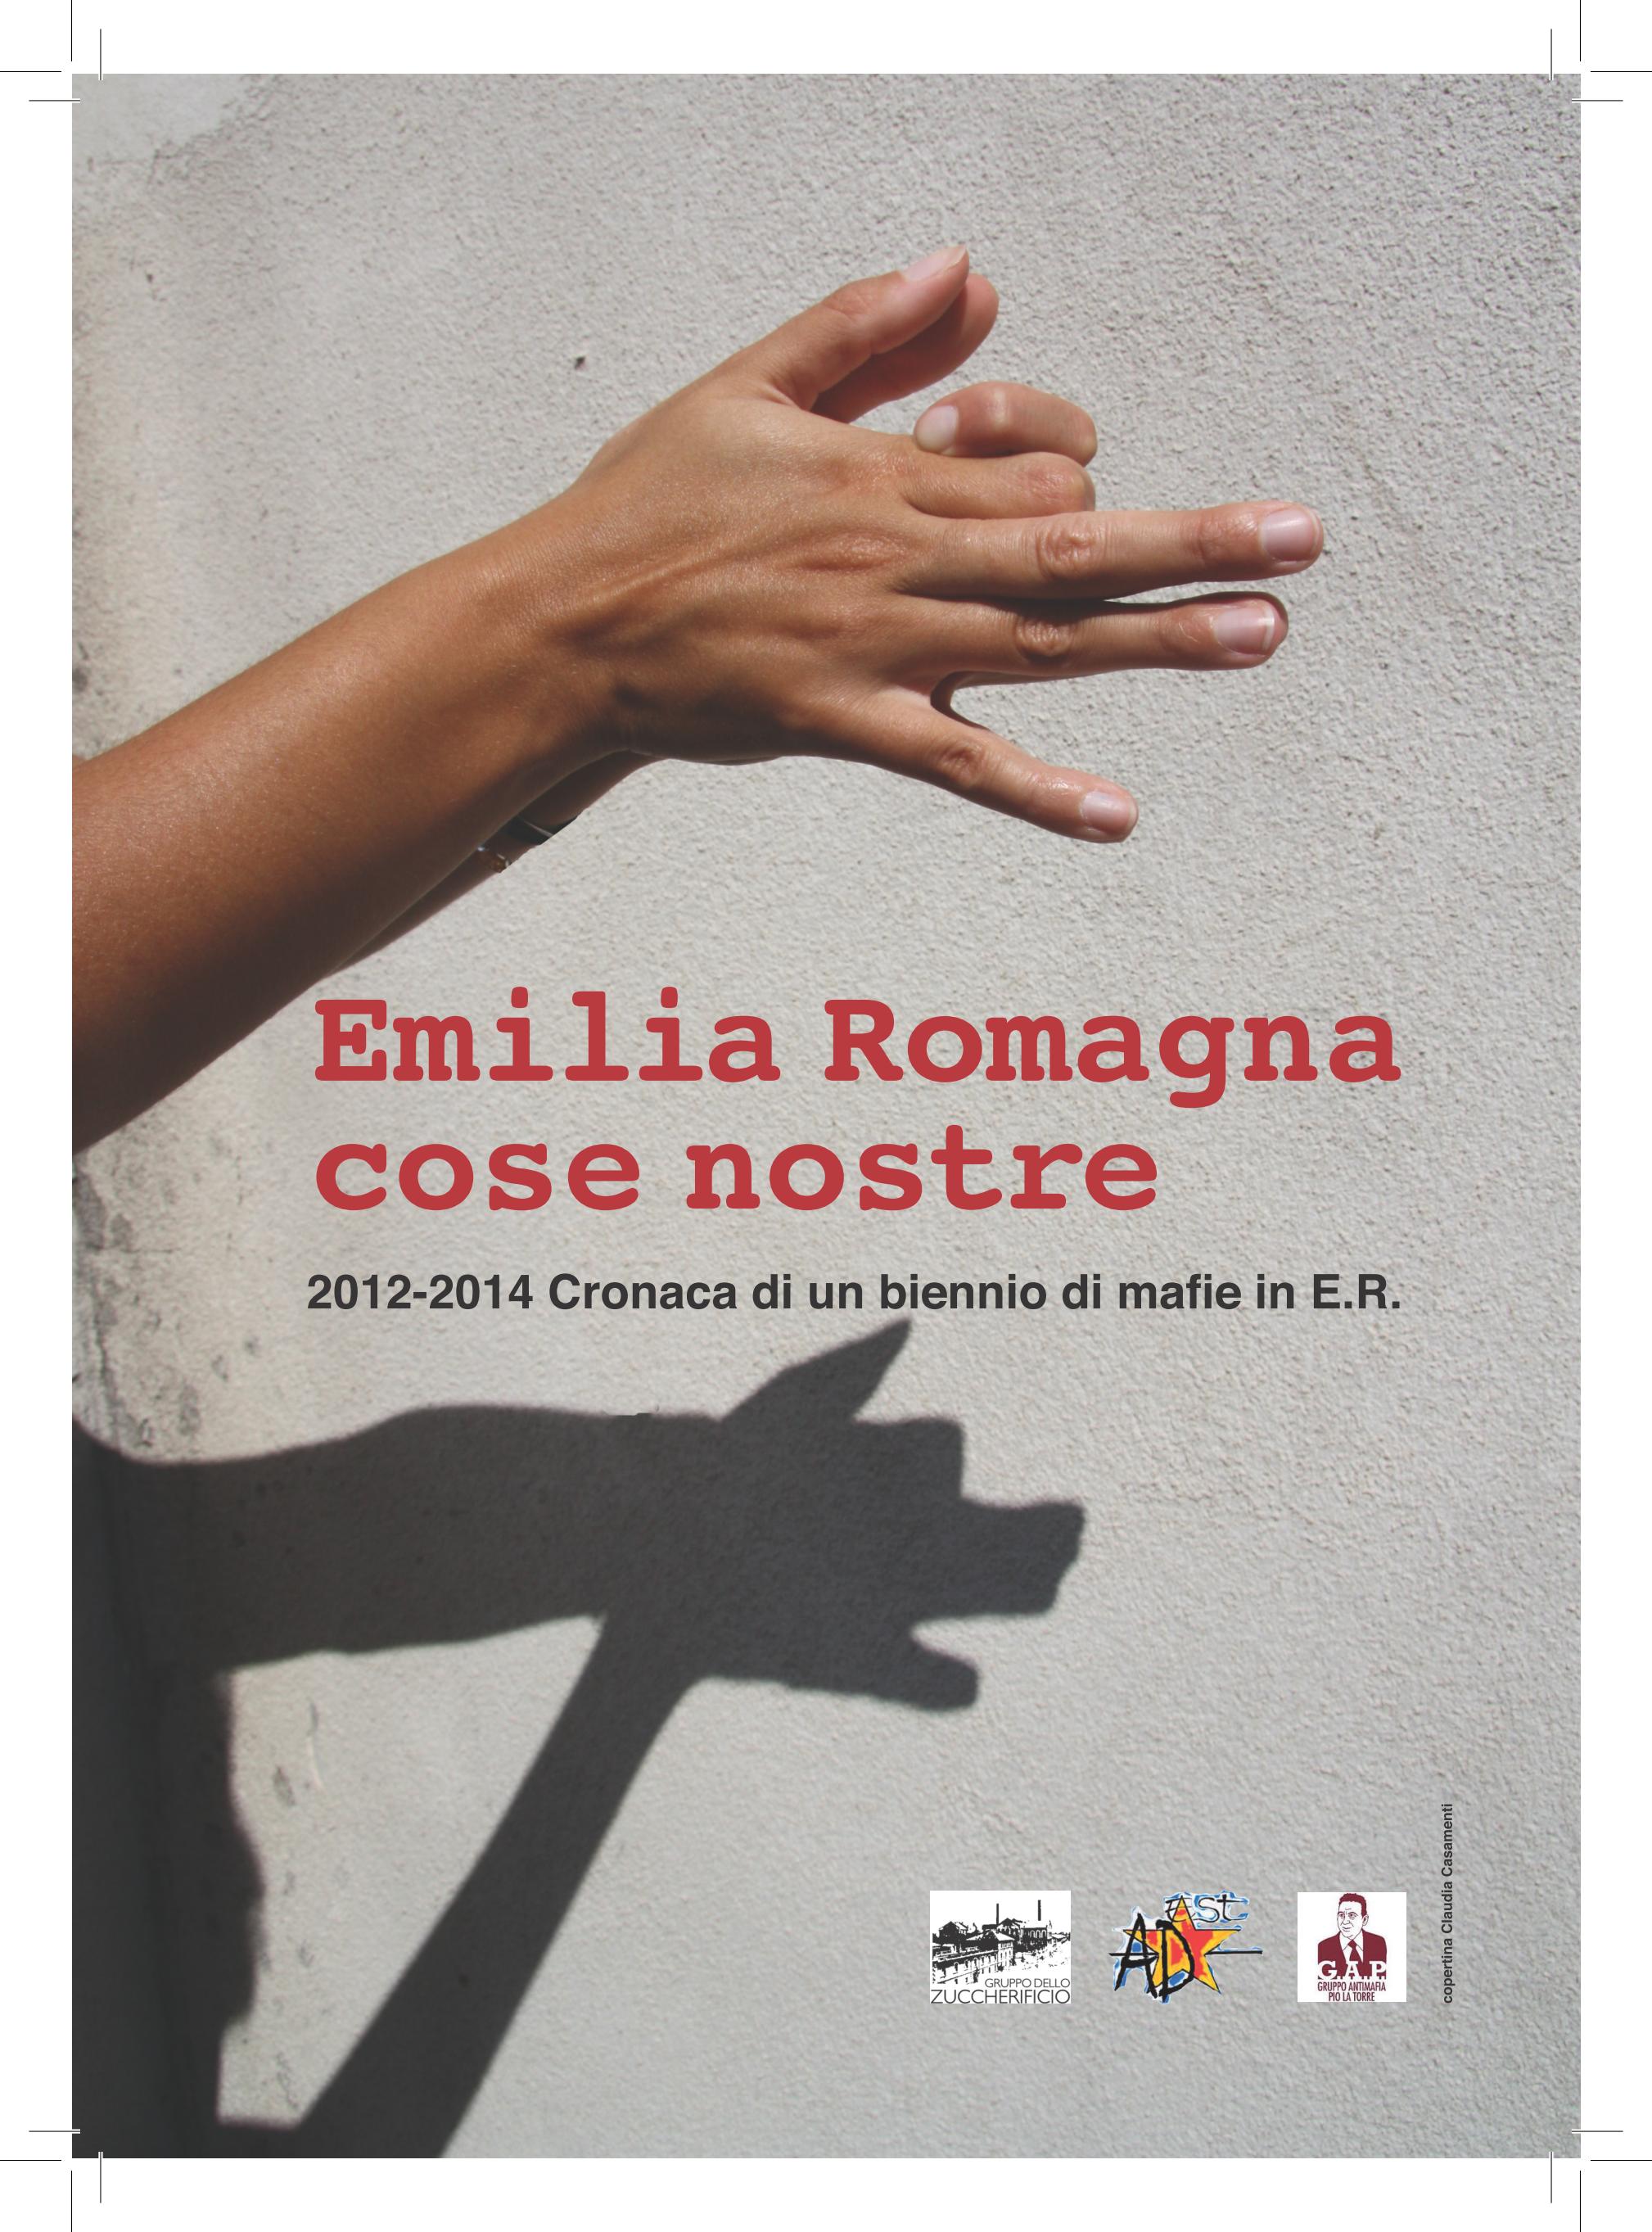 Emilia-Romagna. Cose nostre (2012-2014: cronaca di un biennio di mafie in E.R.)